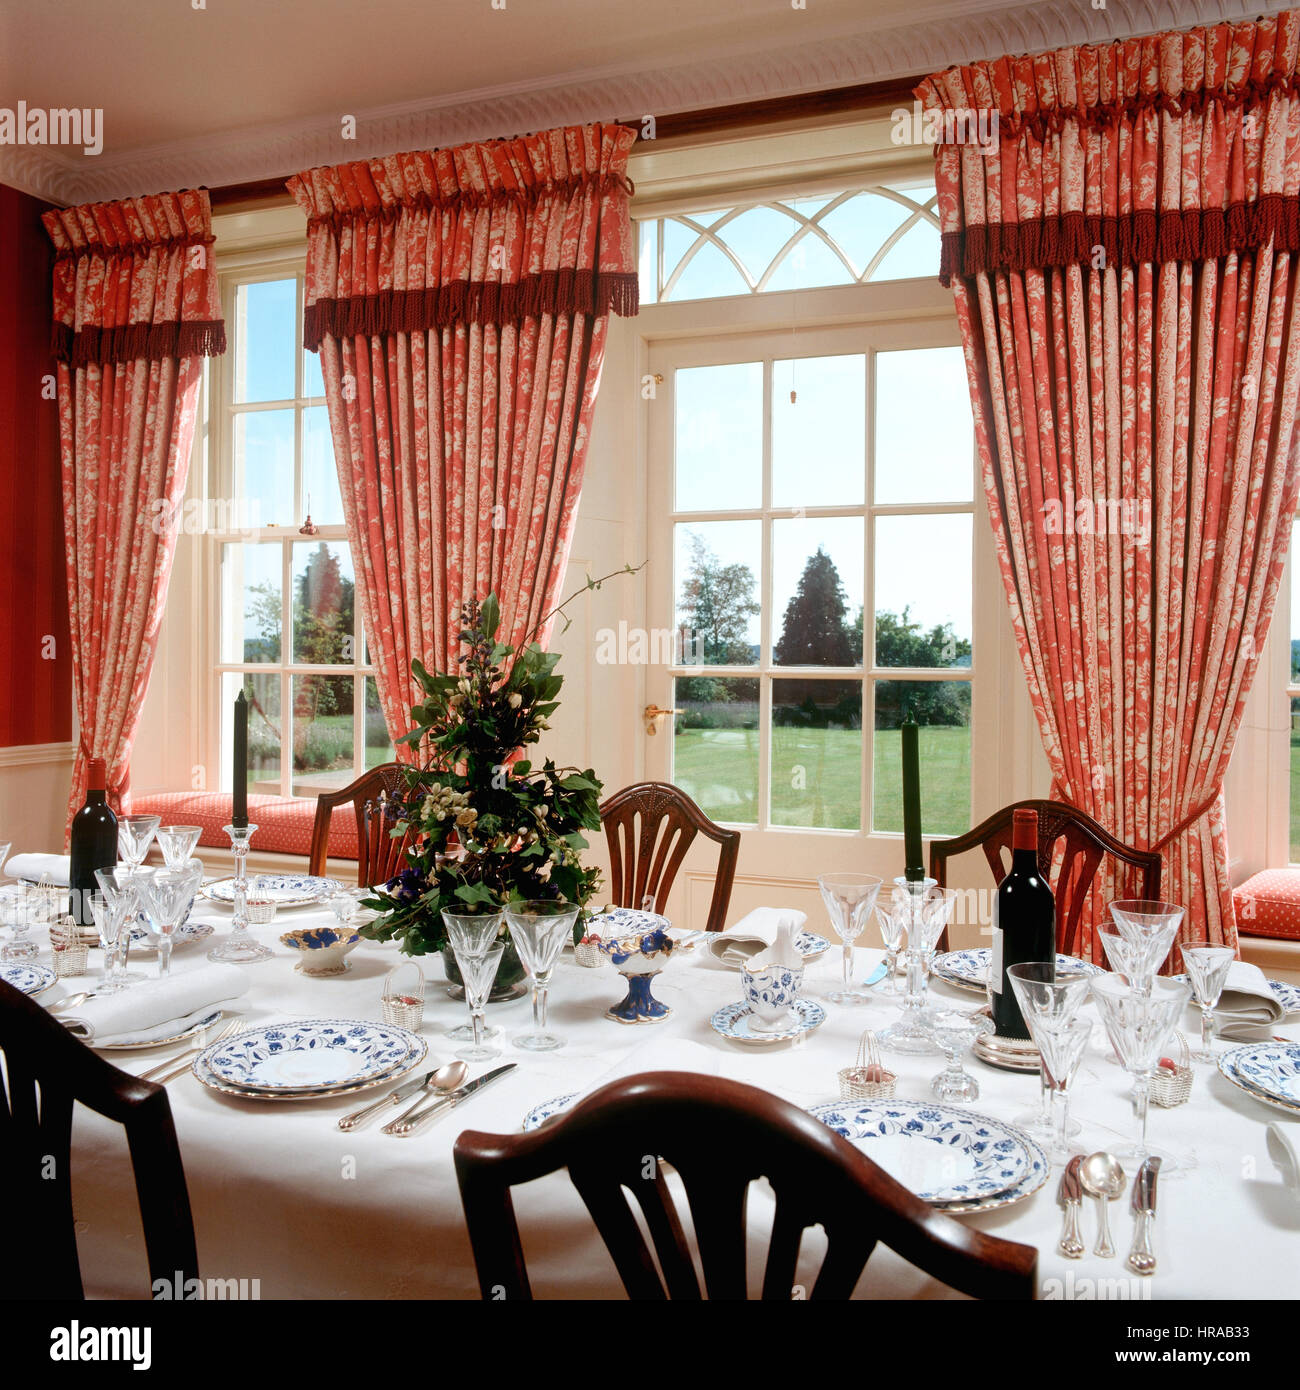 Cina e vetreria in sala da pranzo rosso con tende a motivi geometrici e spettacolare vista sul giardino Foto Stock